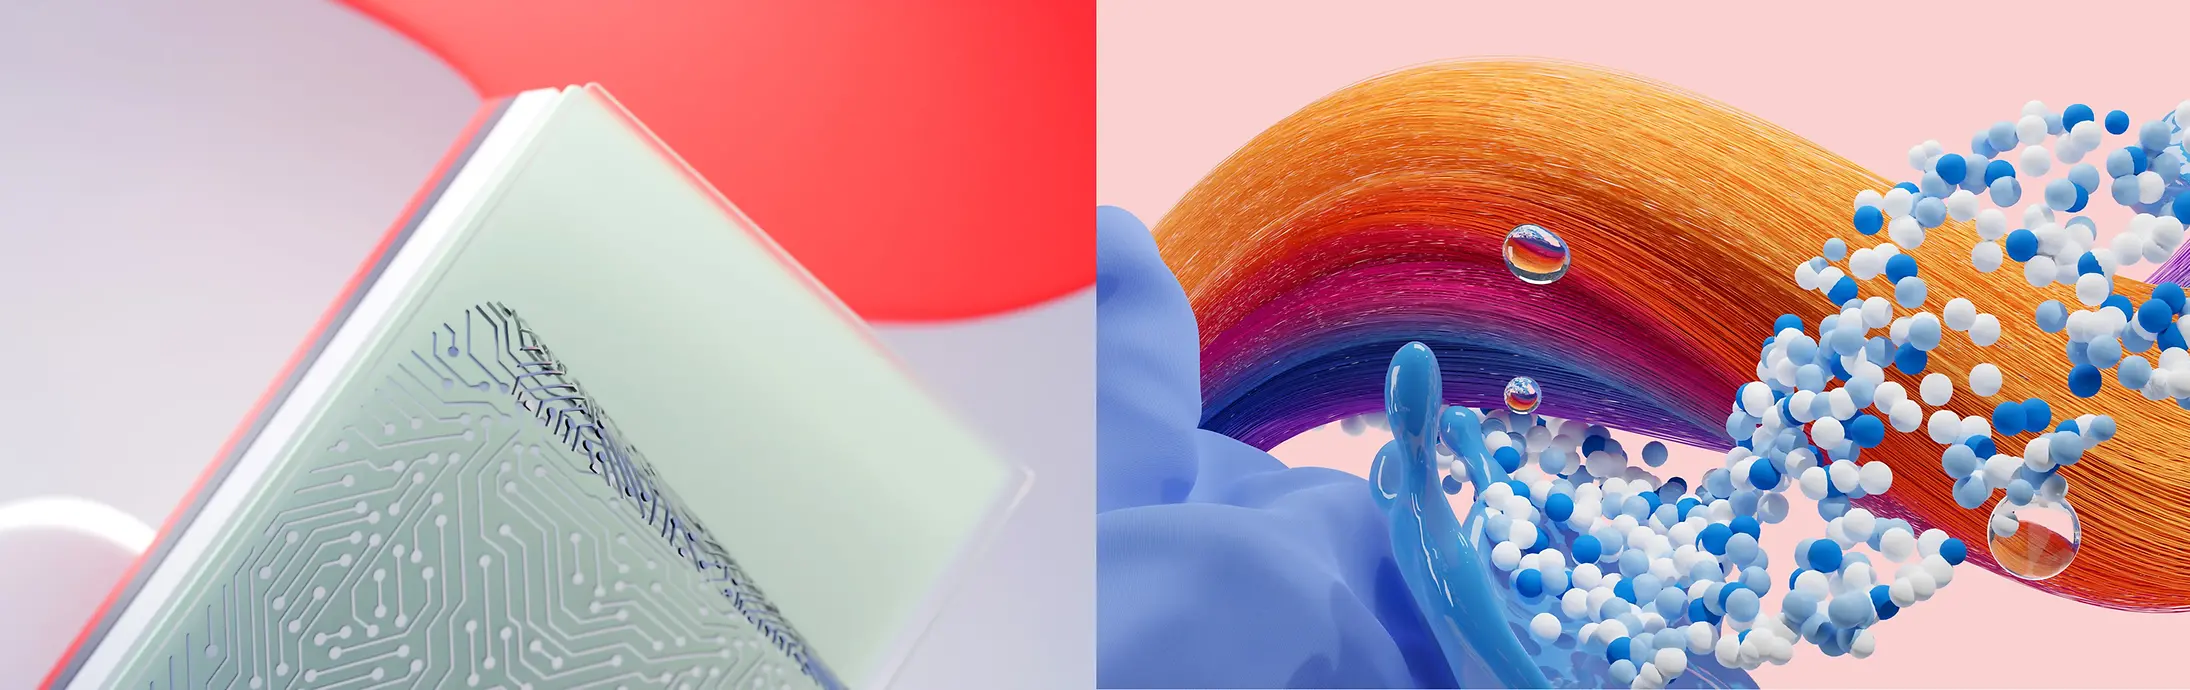 Imagen abstracta que representa las unidades de negocio de Henkel Adhesive Technologies y de Consumer Brands (Hair – Cabello- y Laundry & Home Care – Detergentes y Cuidado del Hogar-).